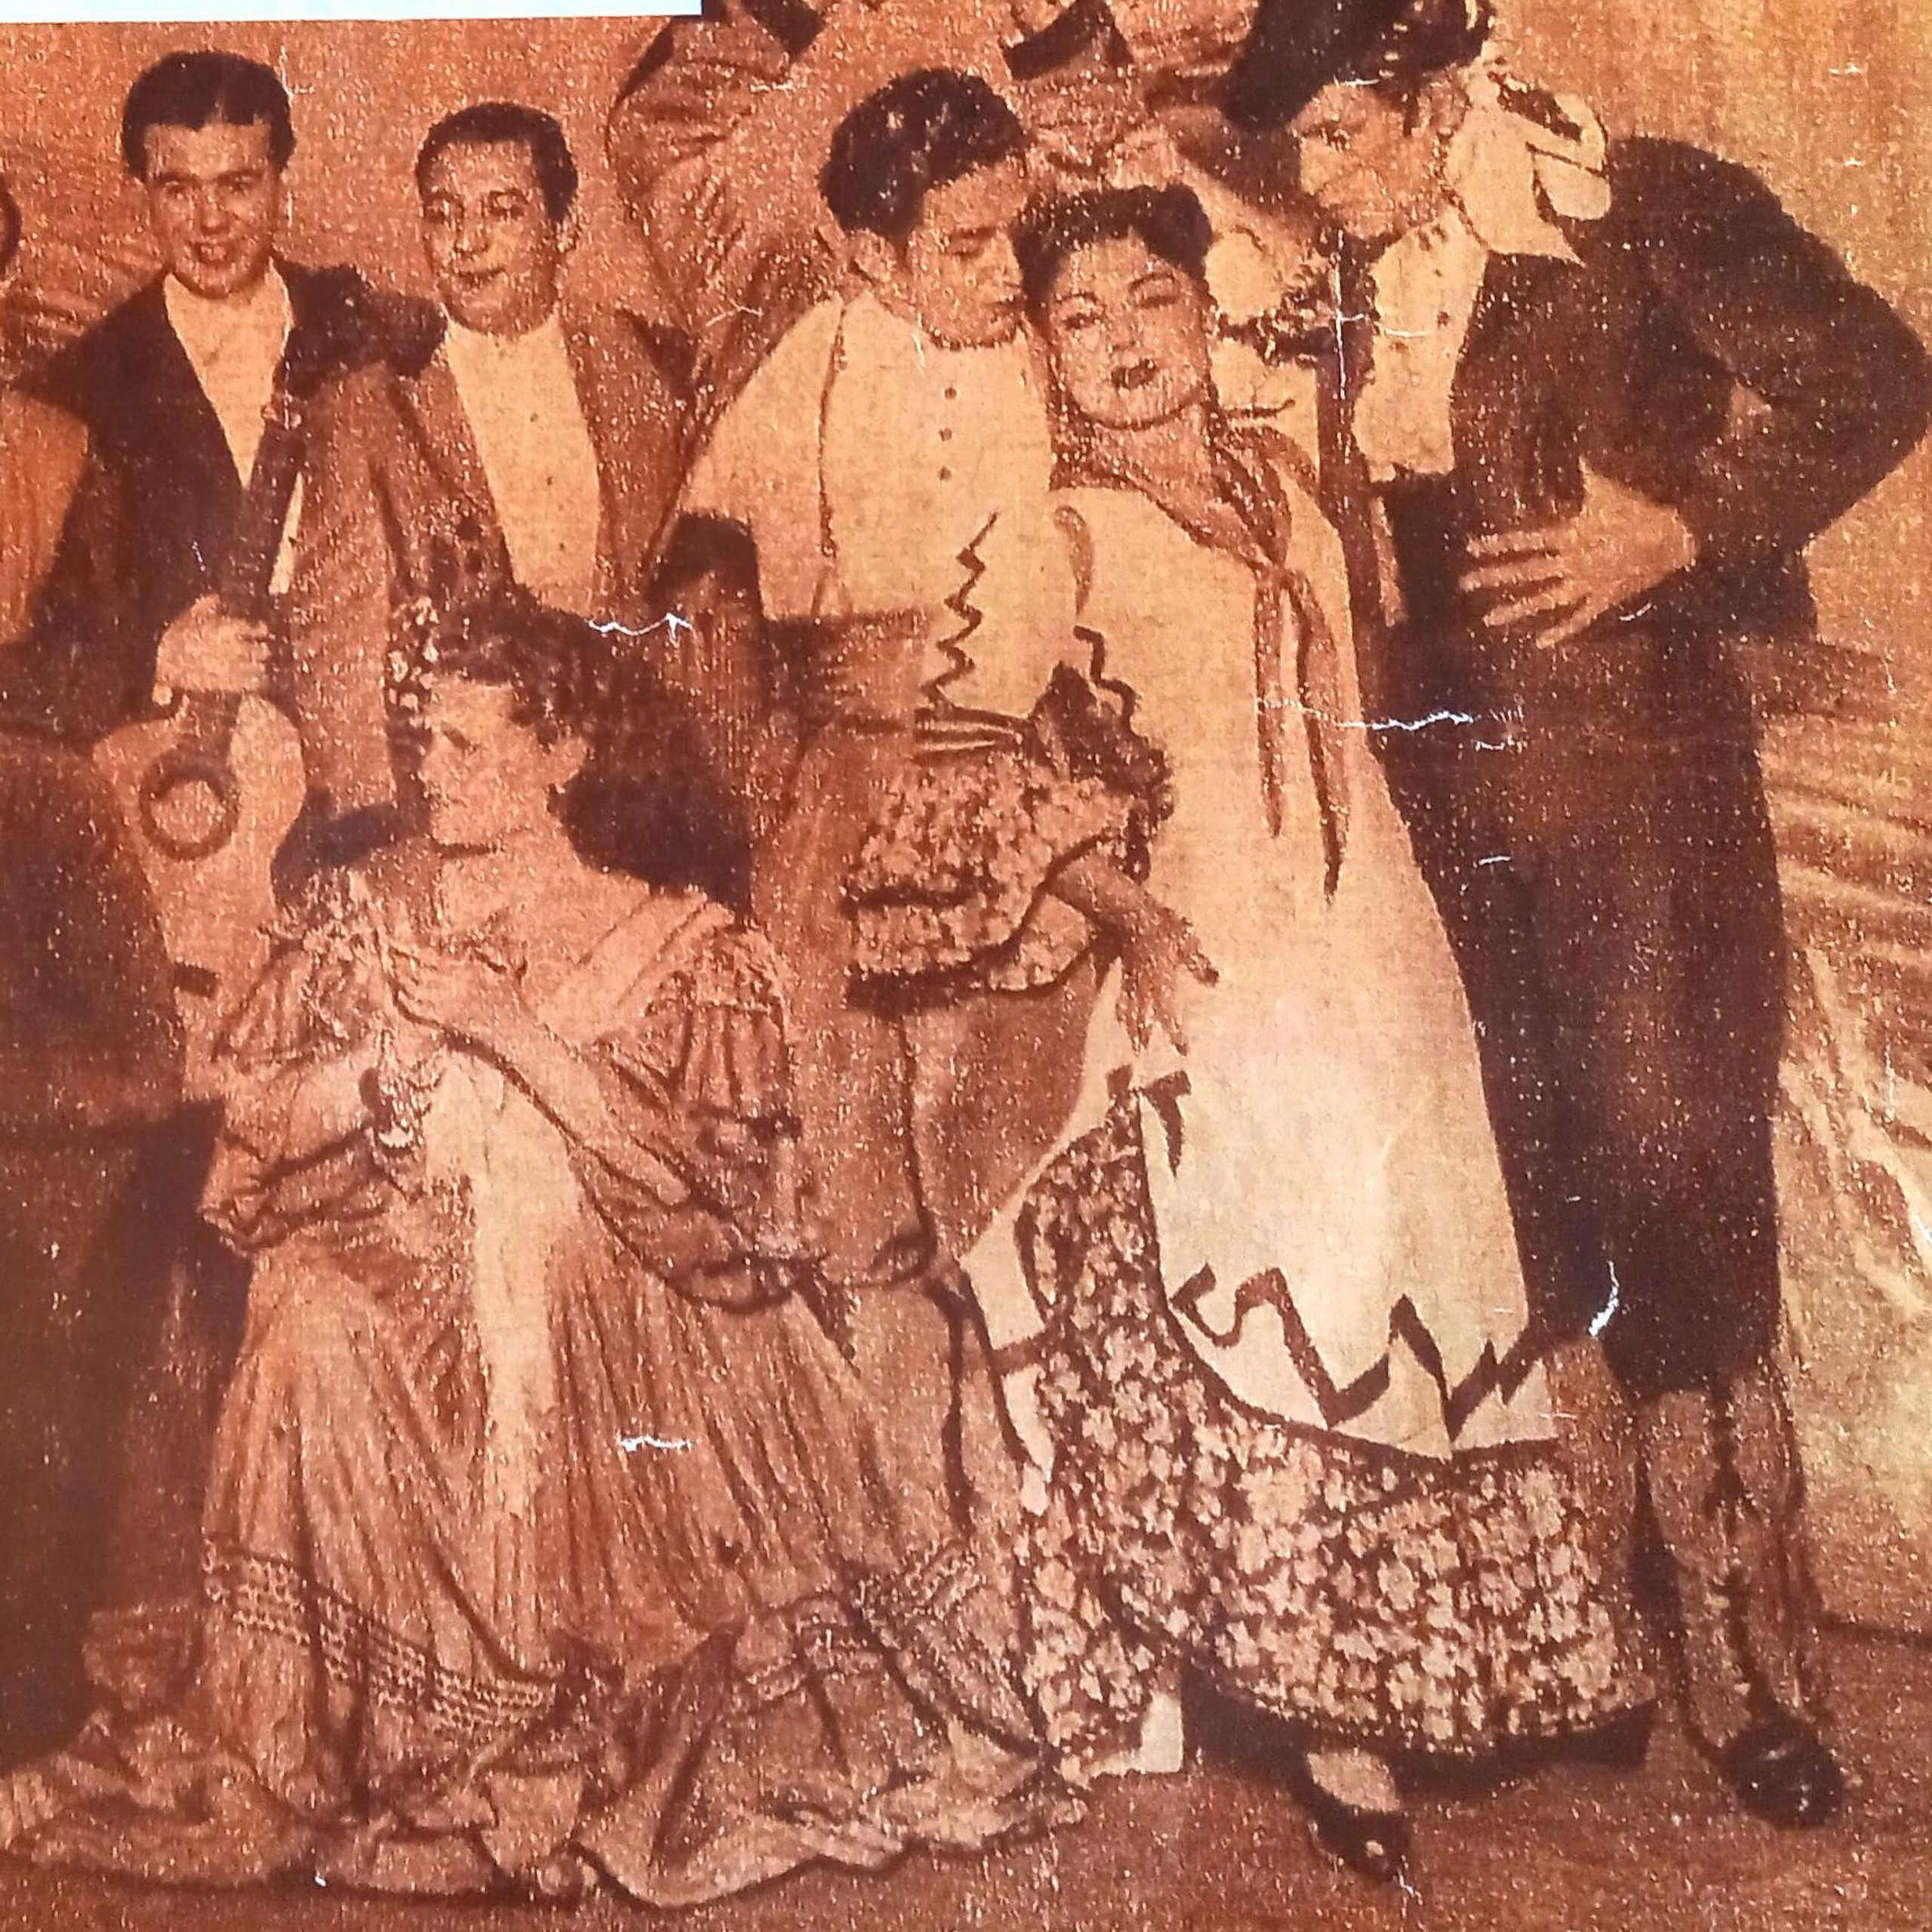 Grupo de artistas flamencos posando para una fotografía.